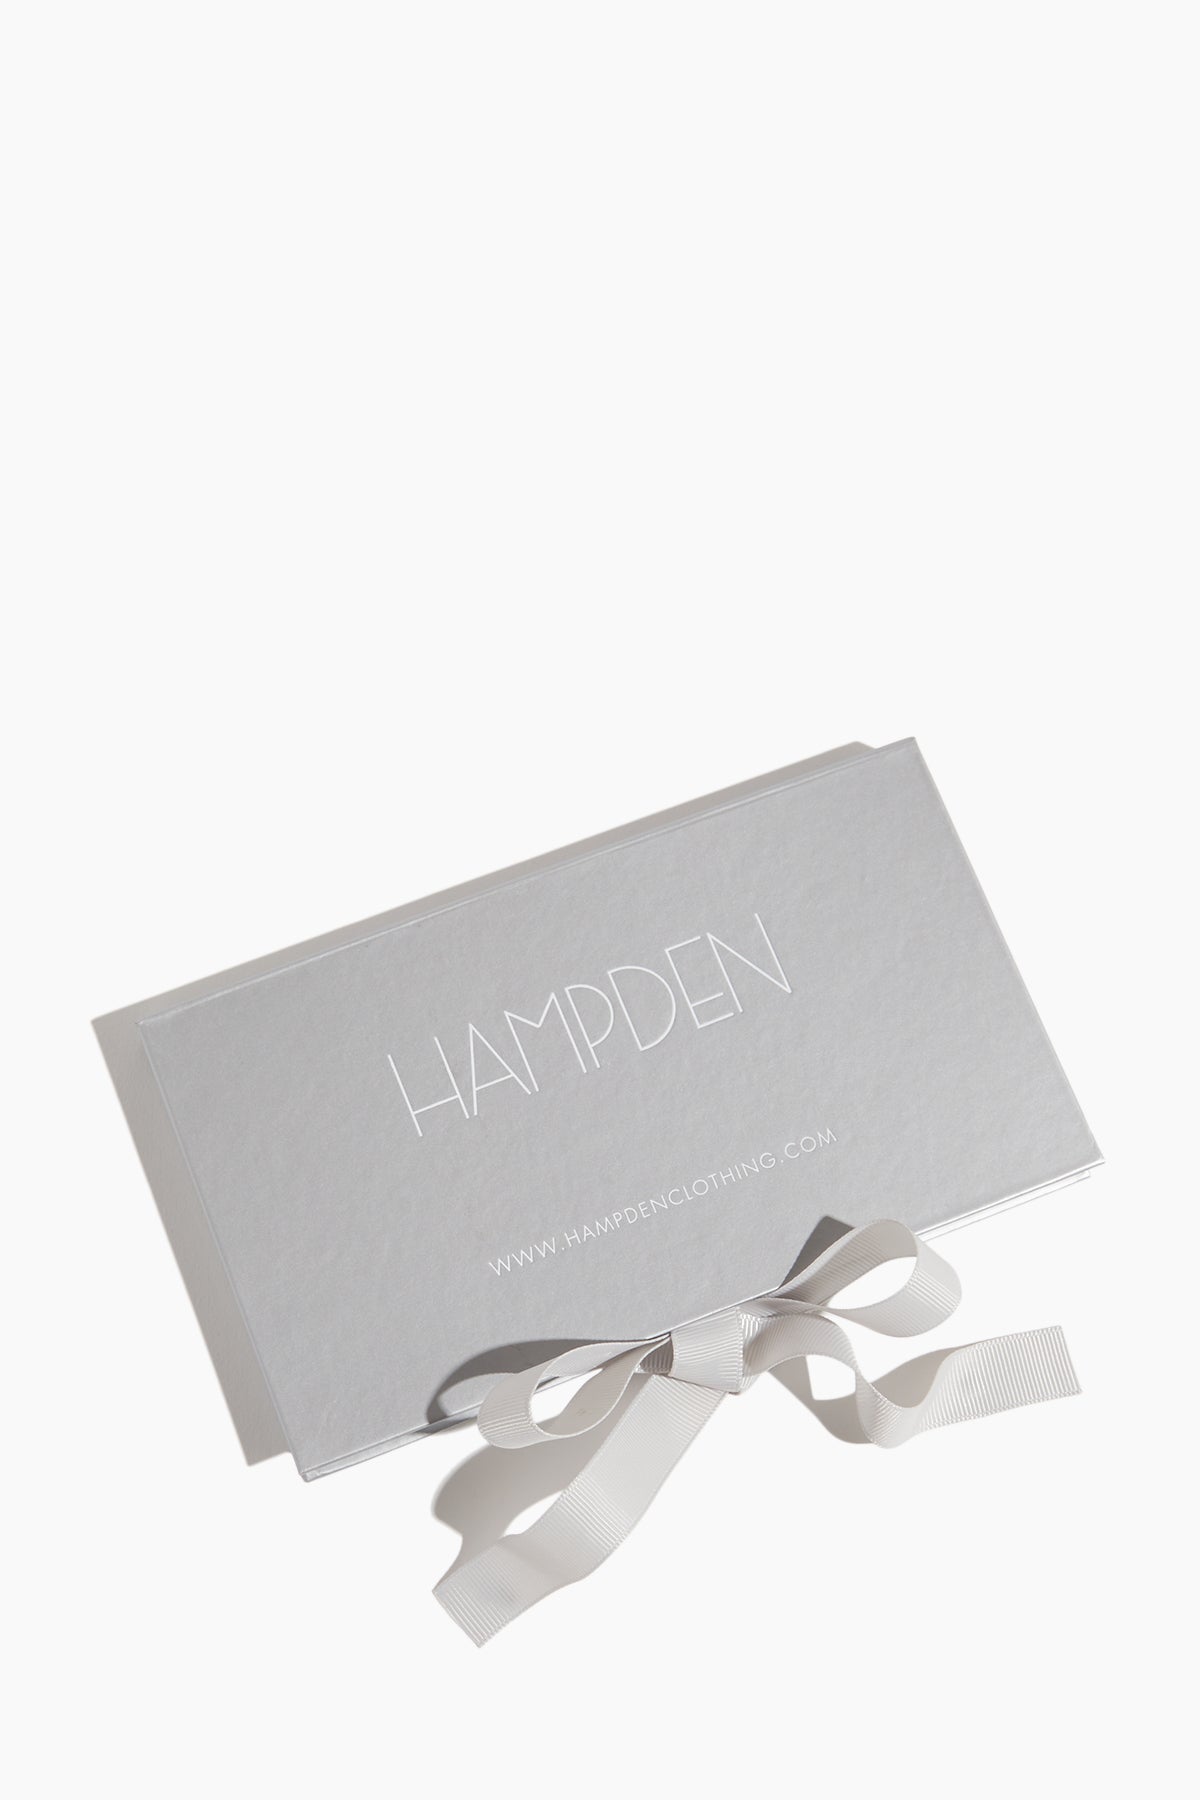 Hampden Clothing Gift Cards Hampden Gift Card